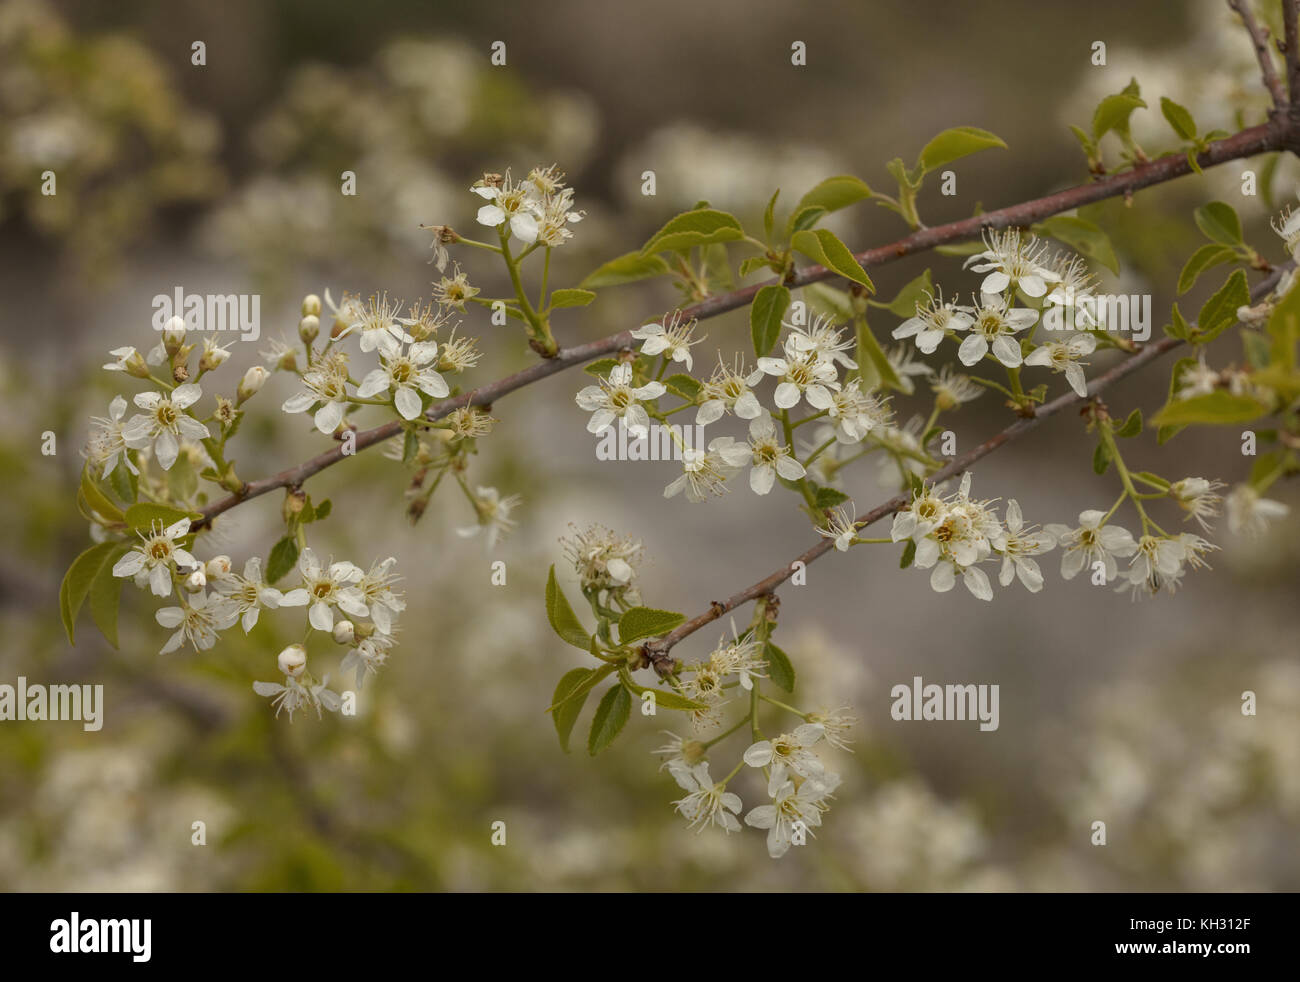 St Lucie cherry, Prunus mahaleb, mahaleb cherry, St Lucie's cherry, Stock Photo